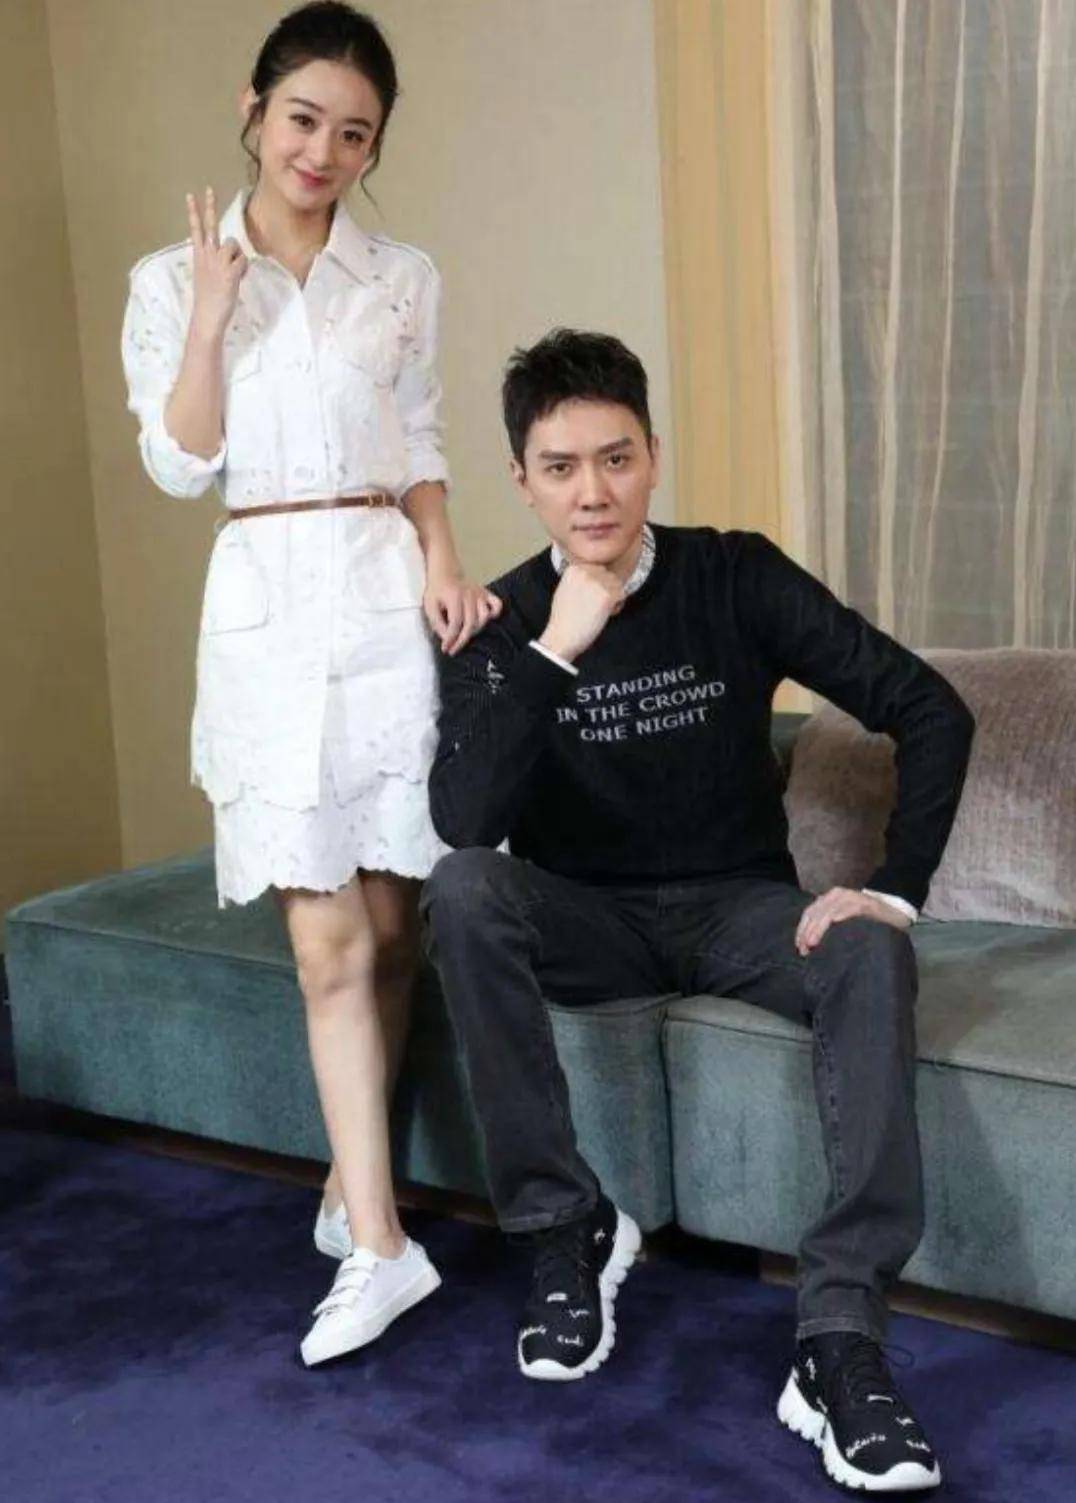 冯绍峰和赵丽颖离婚后首次同框,聚餐照片引发猜测